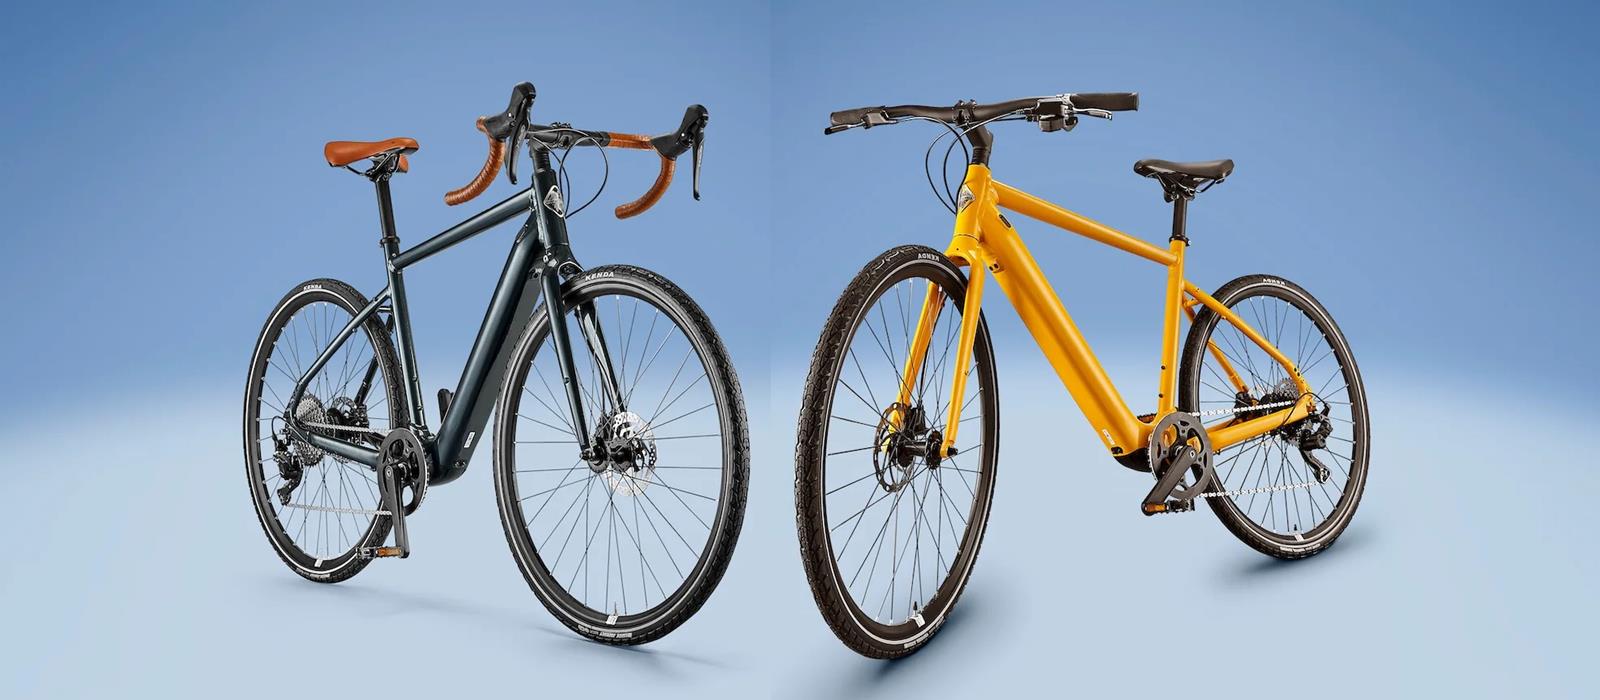 Nowe rowery elektryczne Momentum od Giant. Oto Voya E+1 i Voya E+3